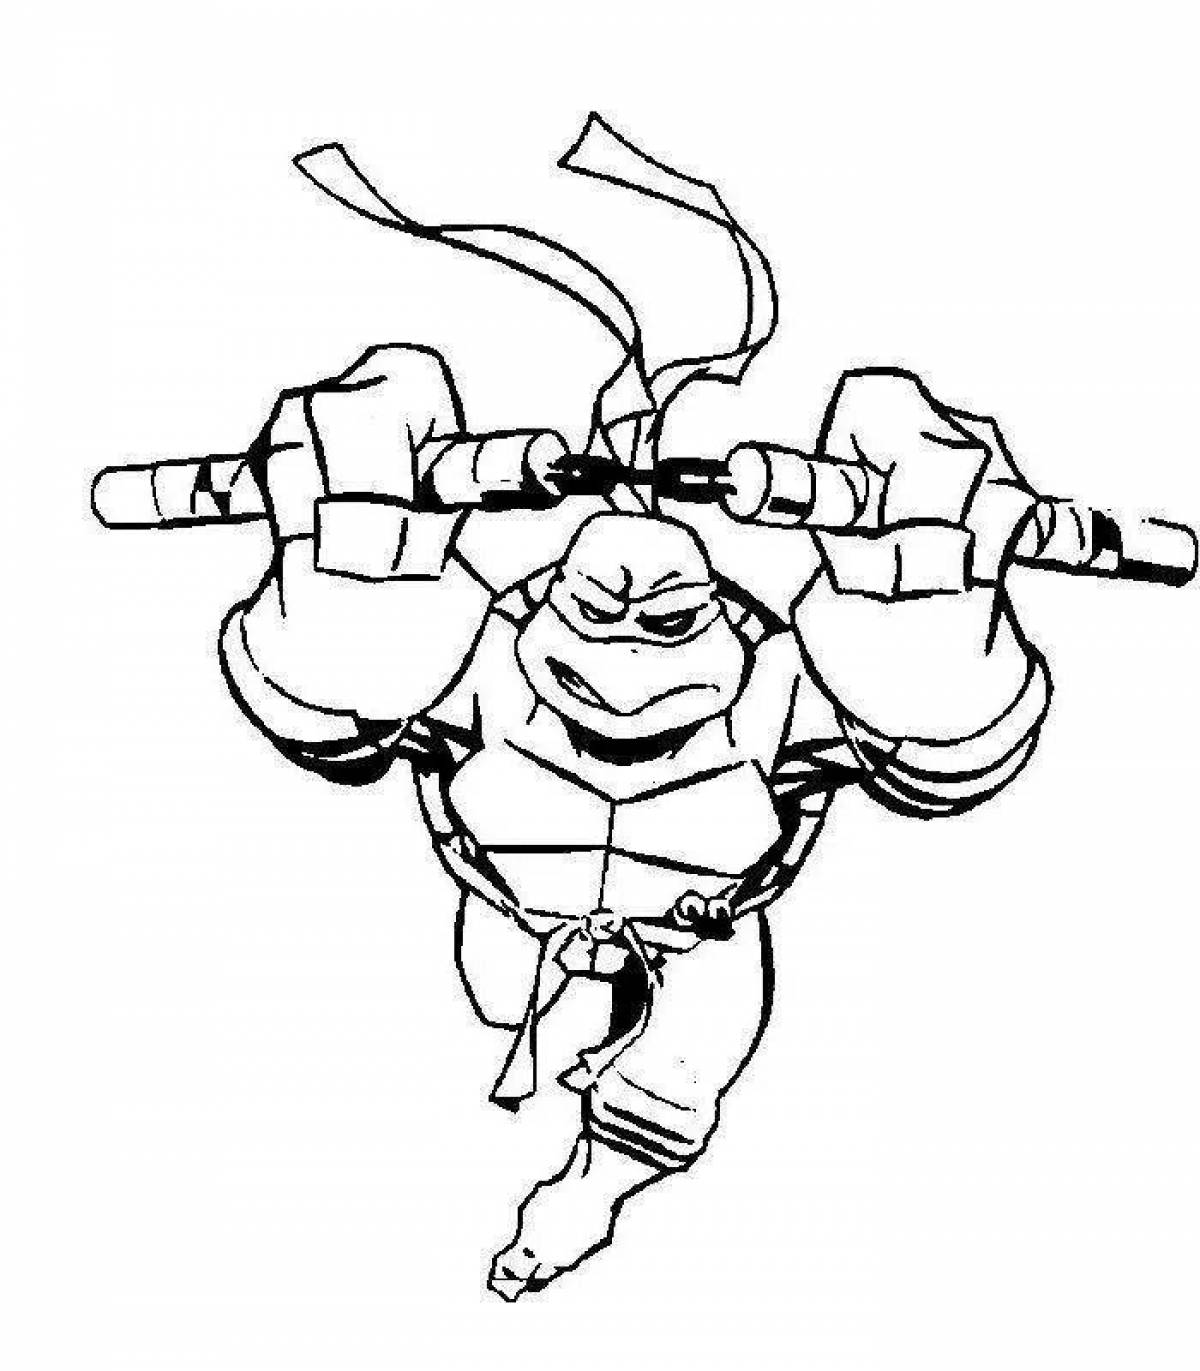 Michelangelo's humorous Teenage Mutant Ninja Turtles coloring book